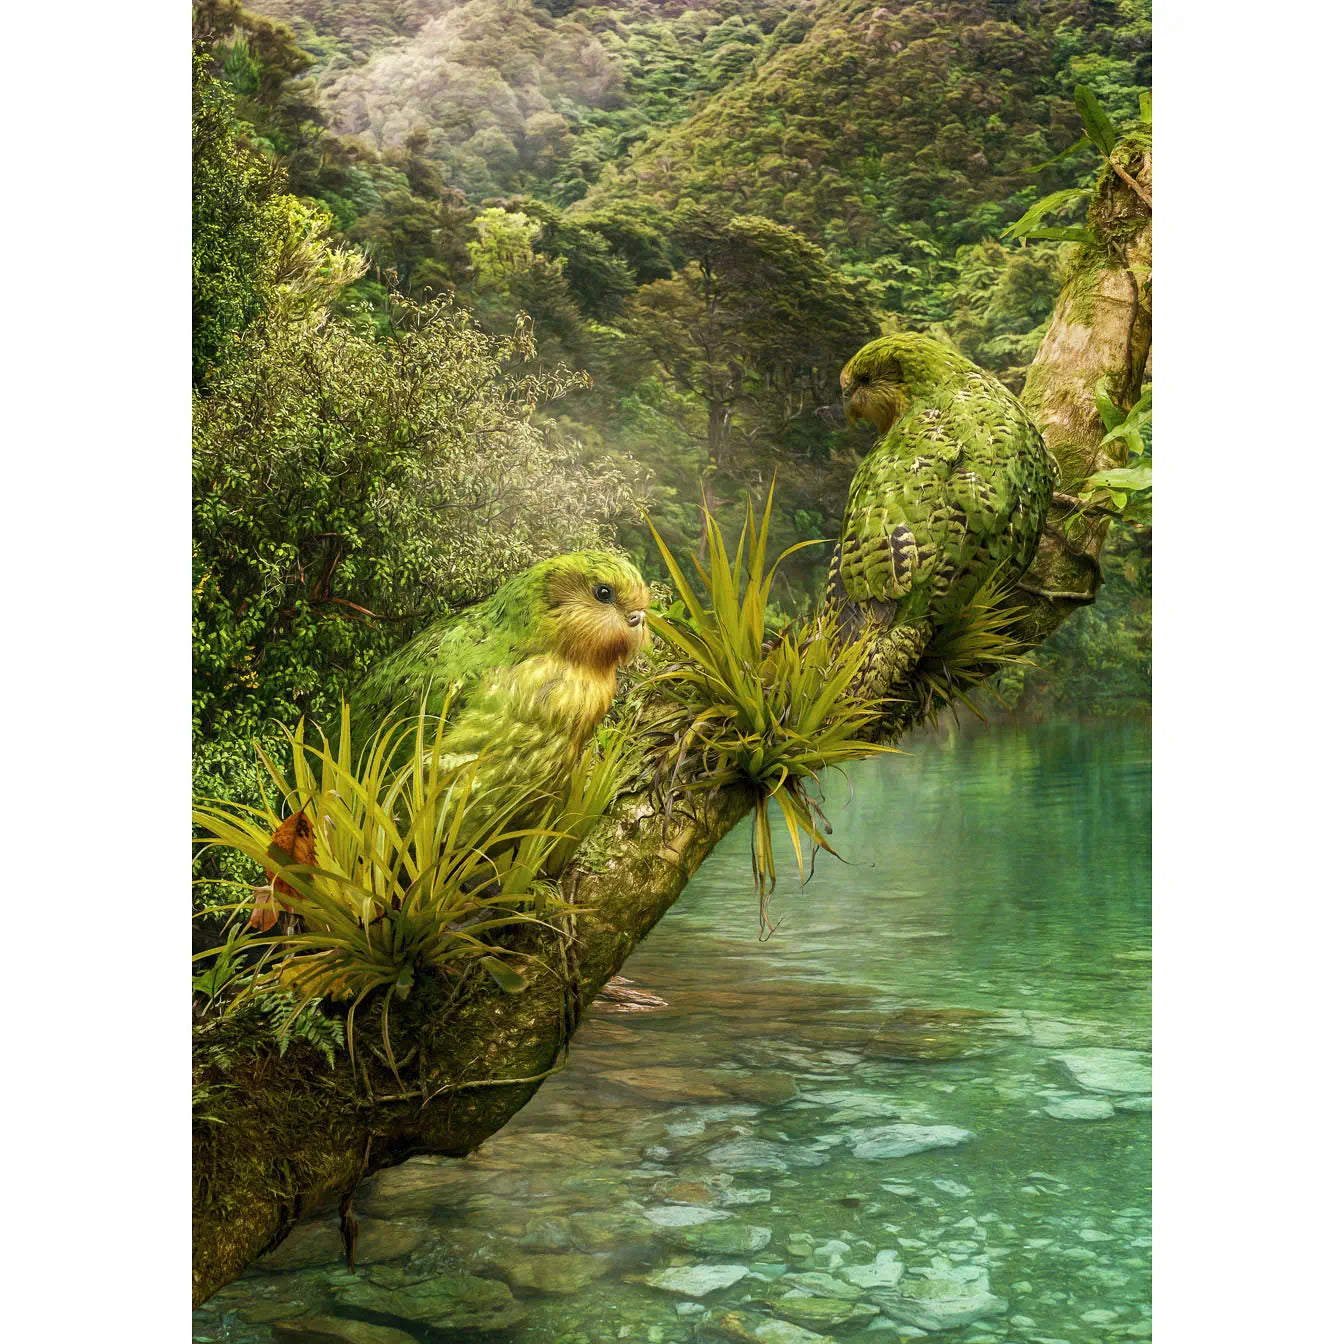 artwork of two kakapo